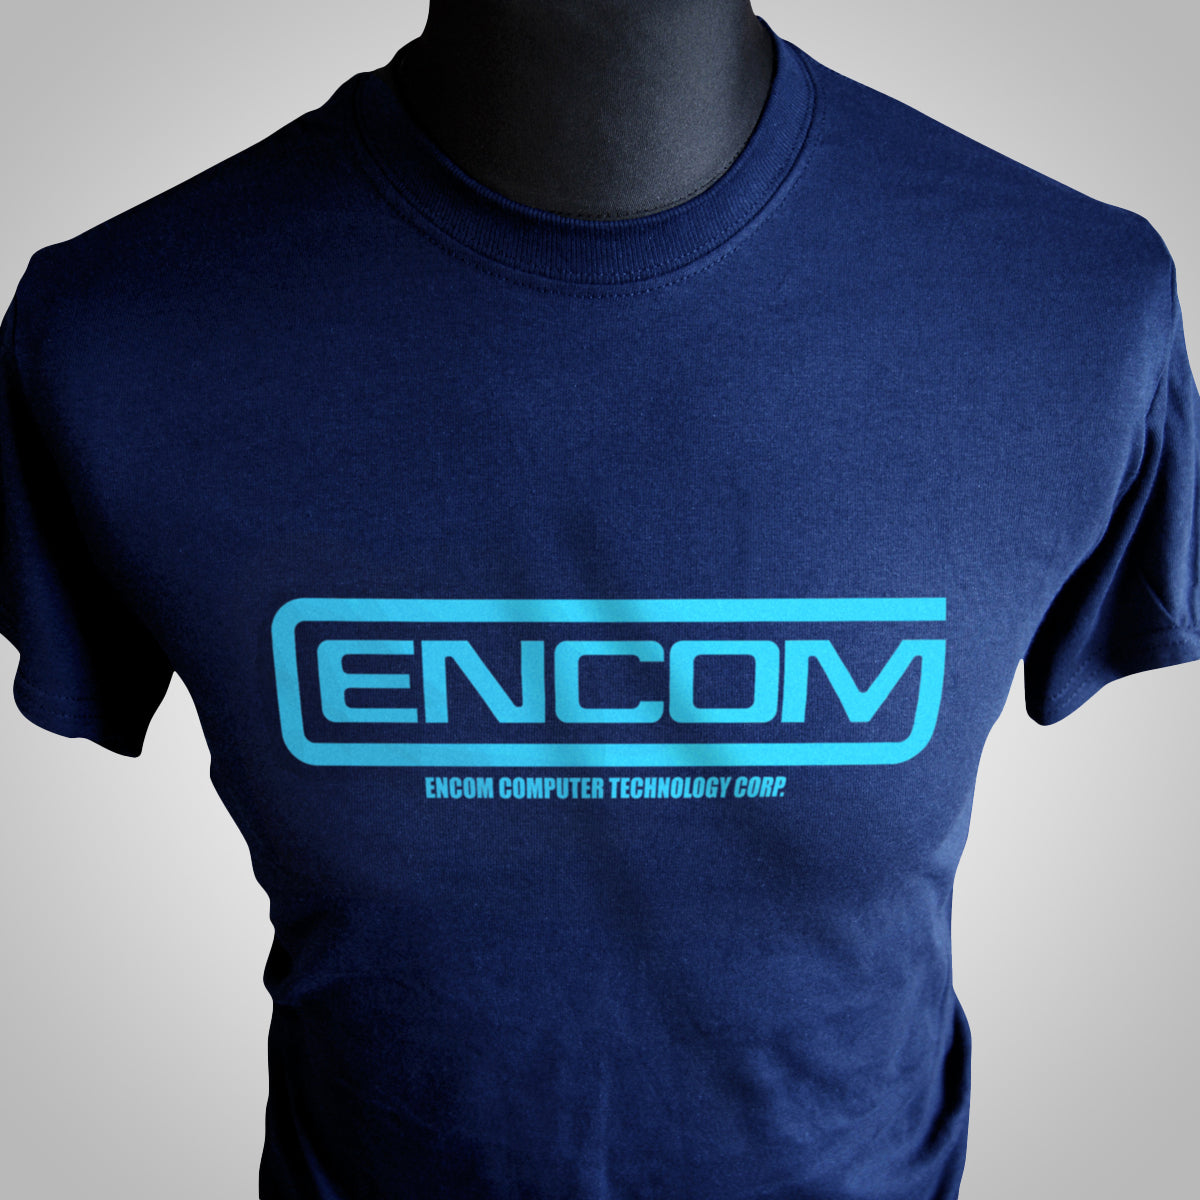 Encom T Shirt